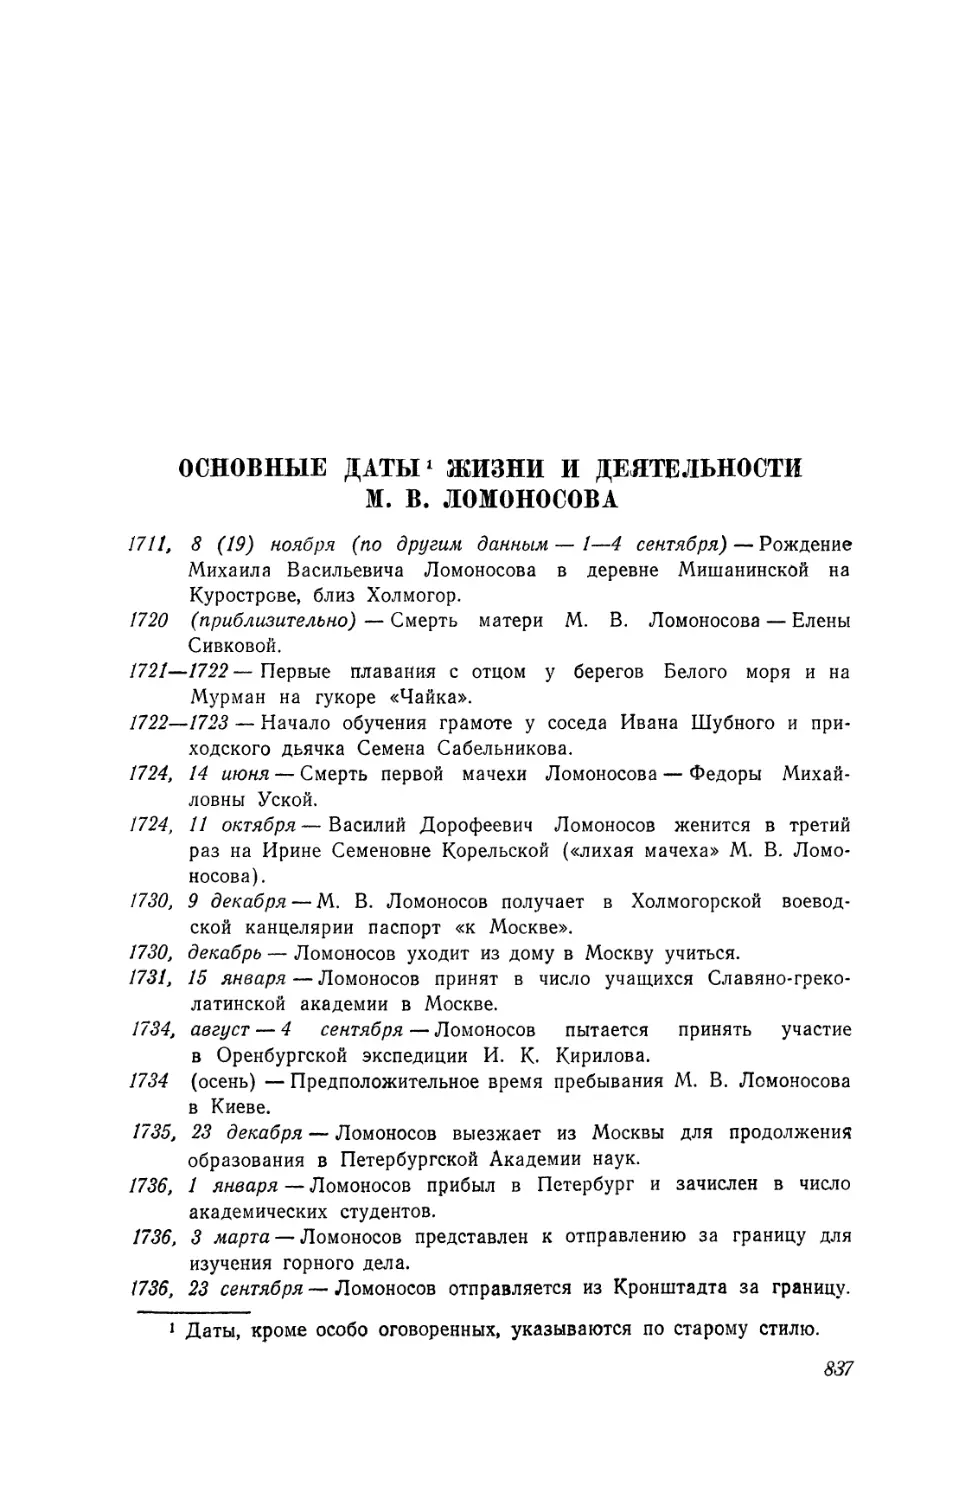 Основные даты жизни и деятельности М. В. Ломоносова